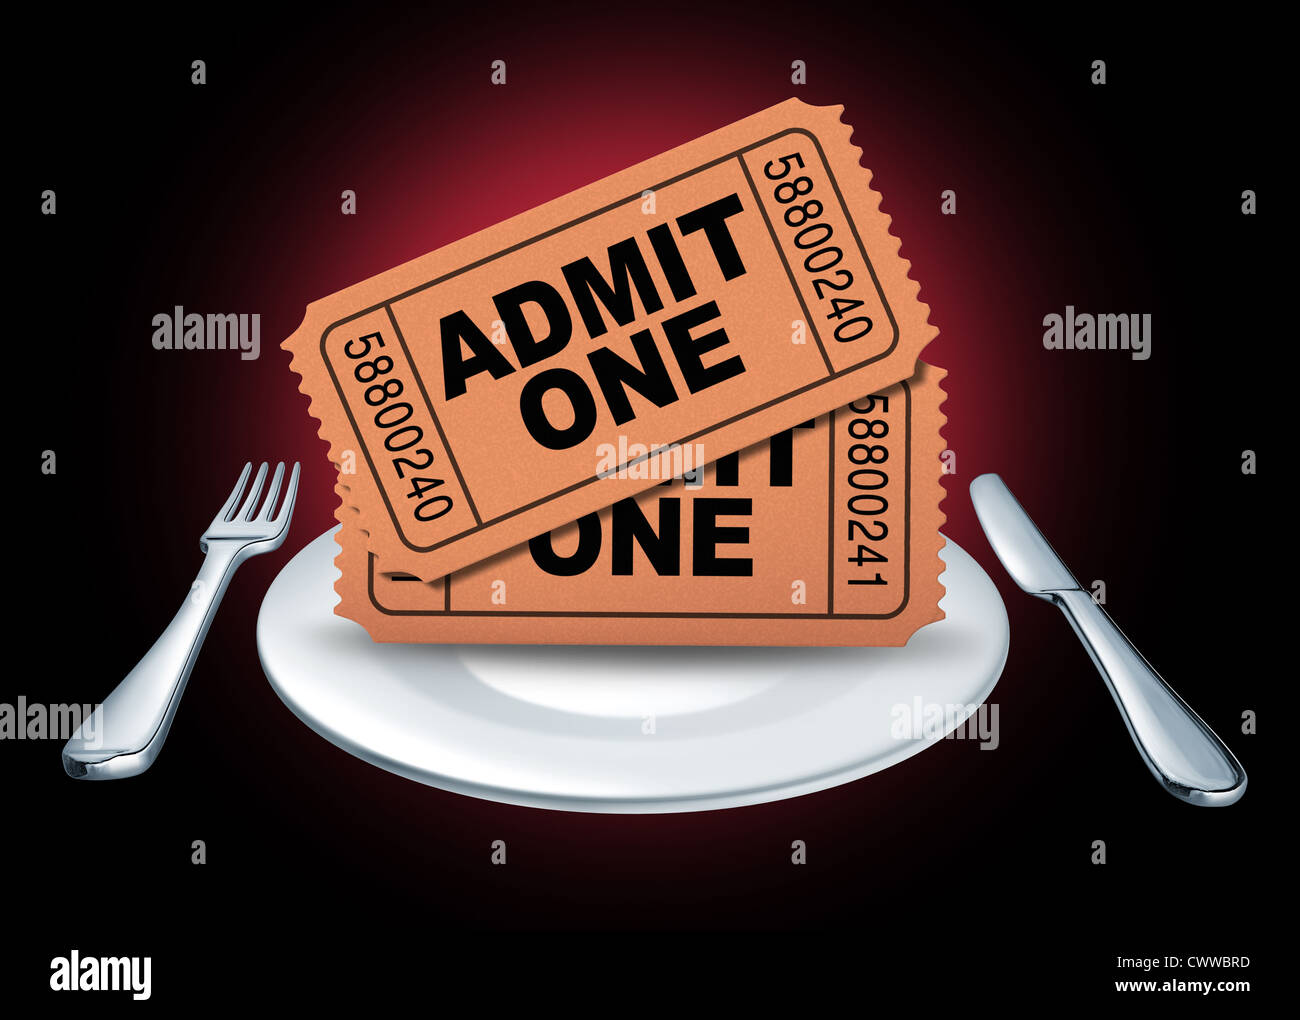 Dinner-Theater-Symbol von Kinokarten für ein Entertainment-Event oder Show auf einem weißen Teller mit Gabel und Messer für eine Nacht aus Essen und genießen Sie Kino vertreten. Stockfoto